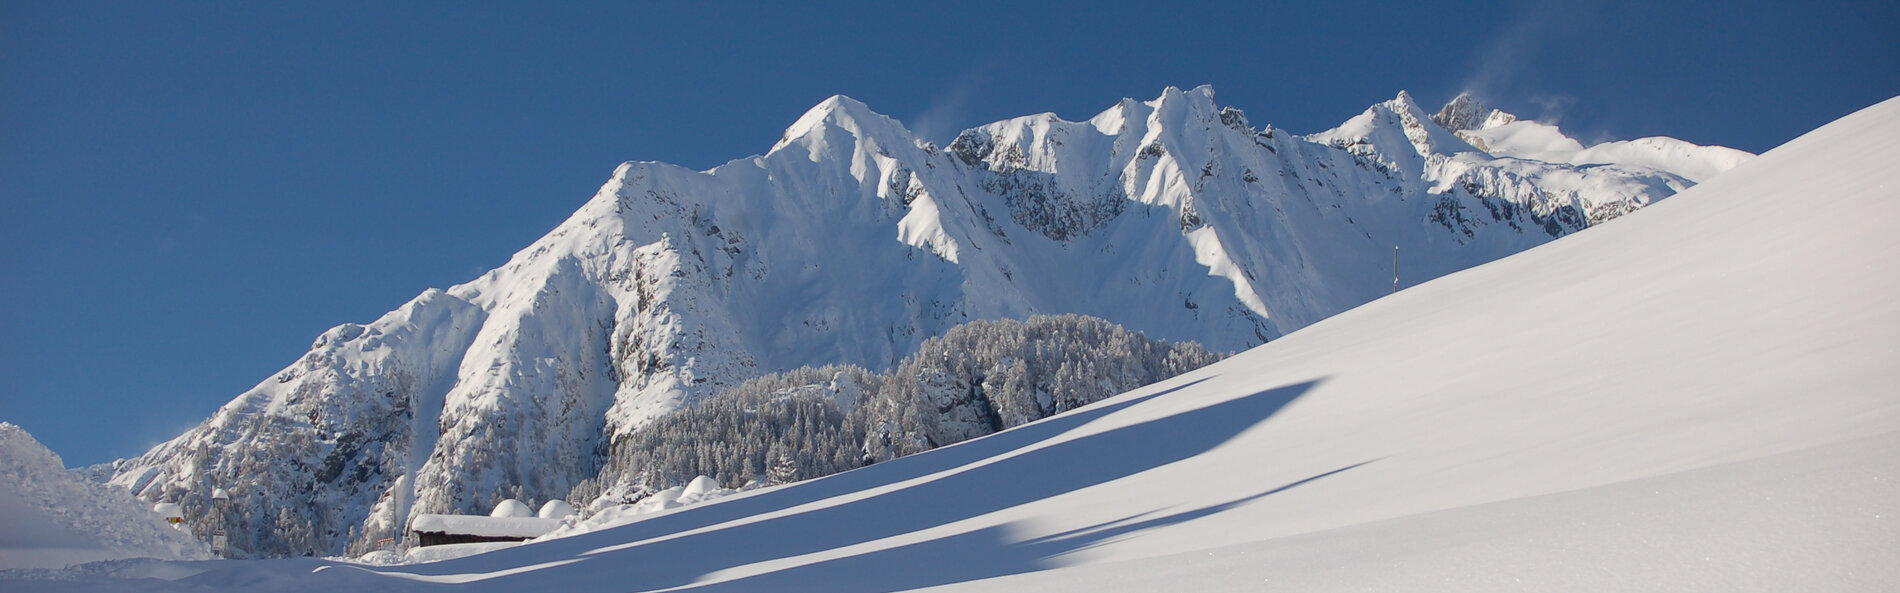 Verschneite Bergkette. Auf den Gipfeln bläst der Wind viel Schnee auf. © TVB Osttirol, F. Steiner